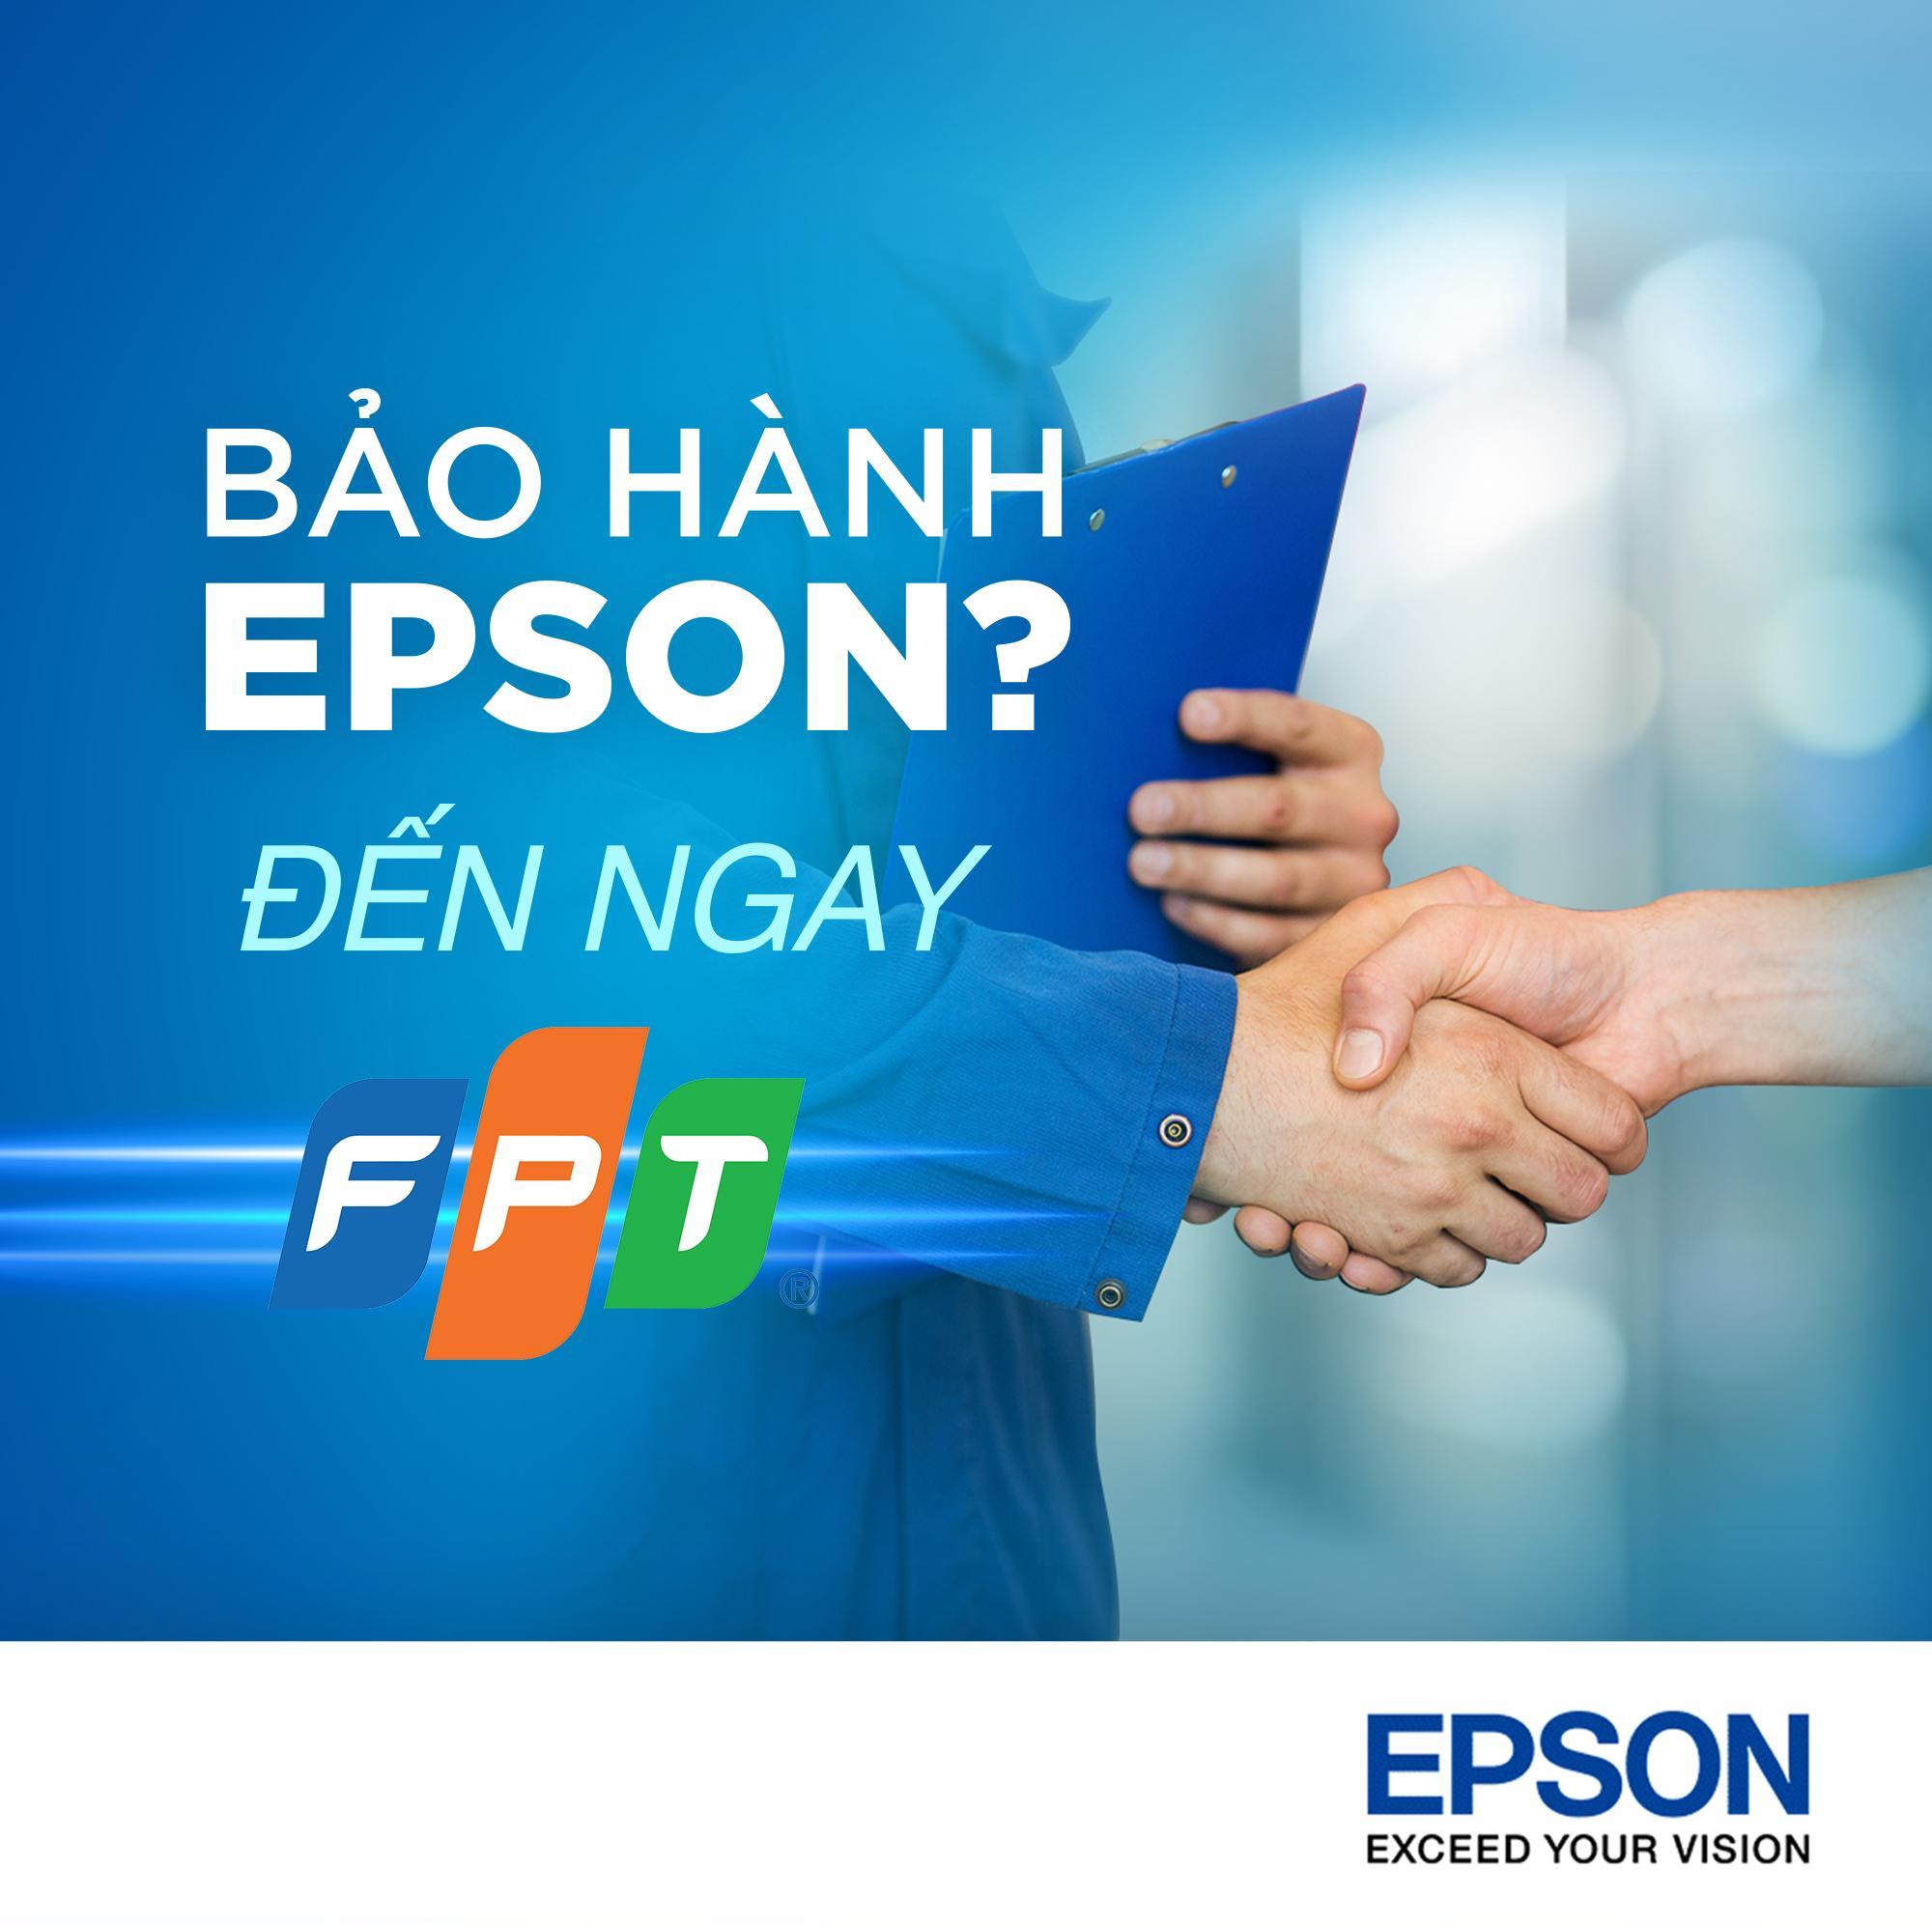 Epson công bố 3 trung tâm bảo hành mới, hợp tác cùng FPT Services